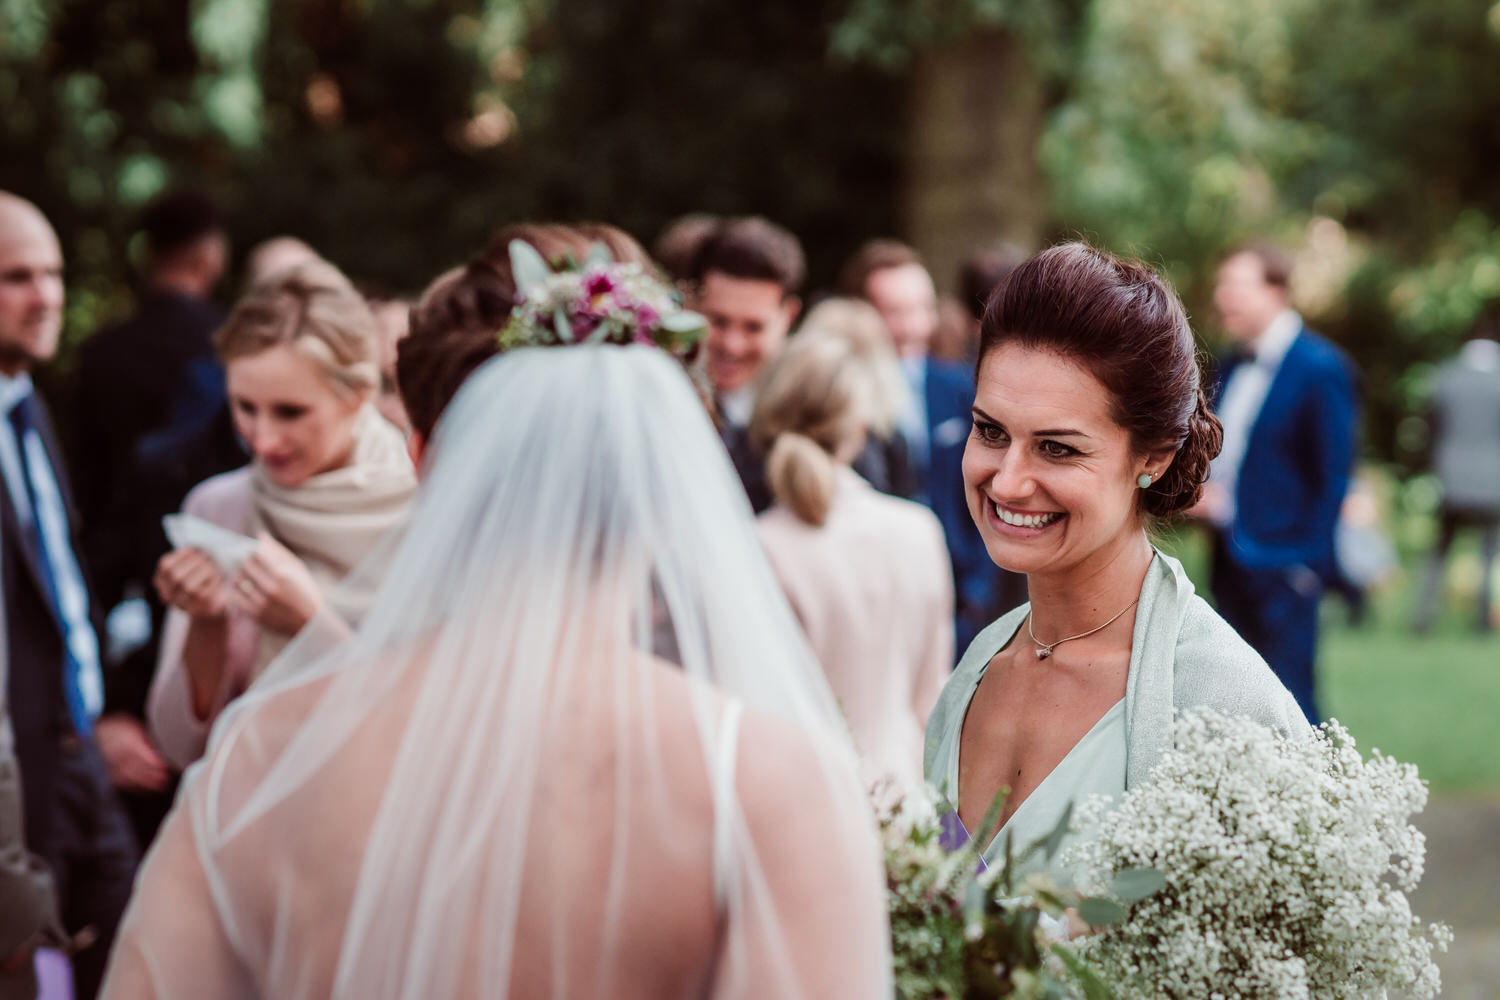 Sektempfang Hochzeit | Hochzeitsfotografie Aachen